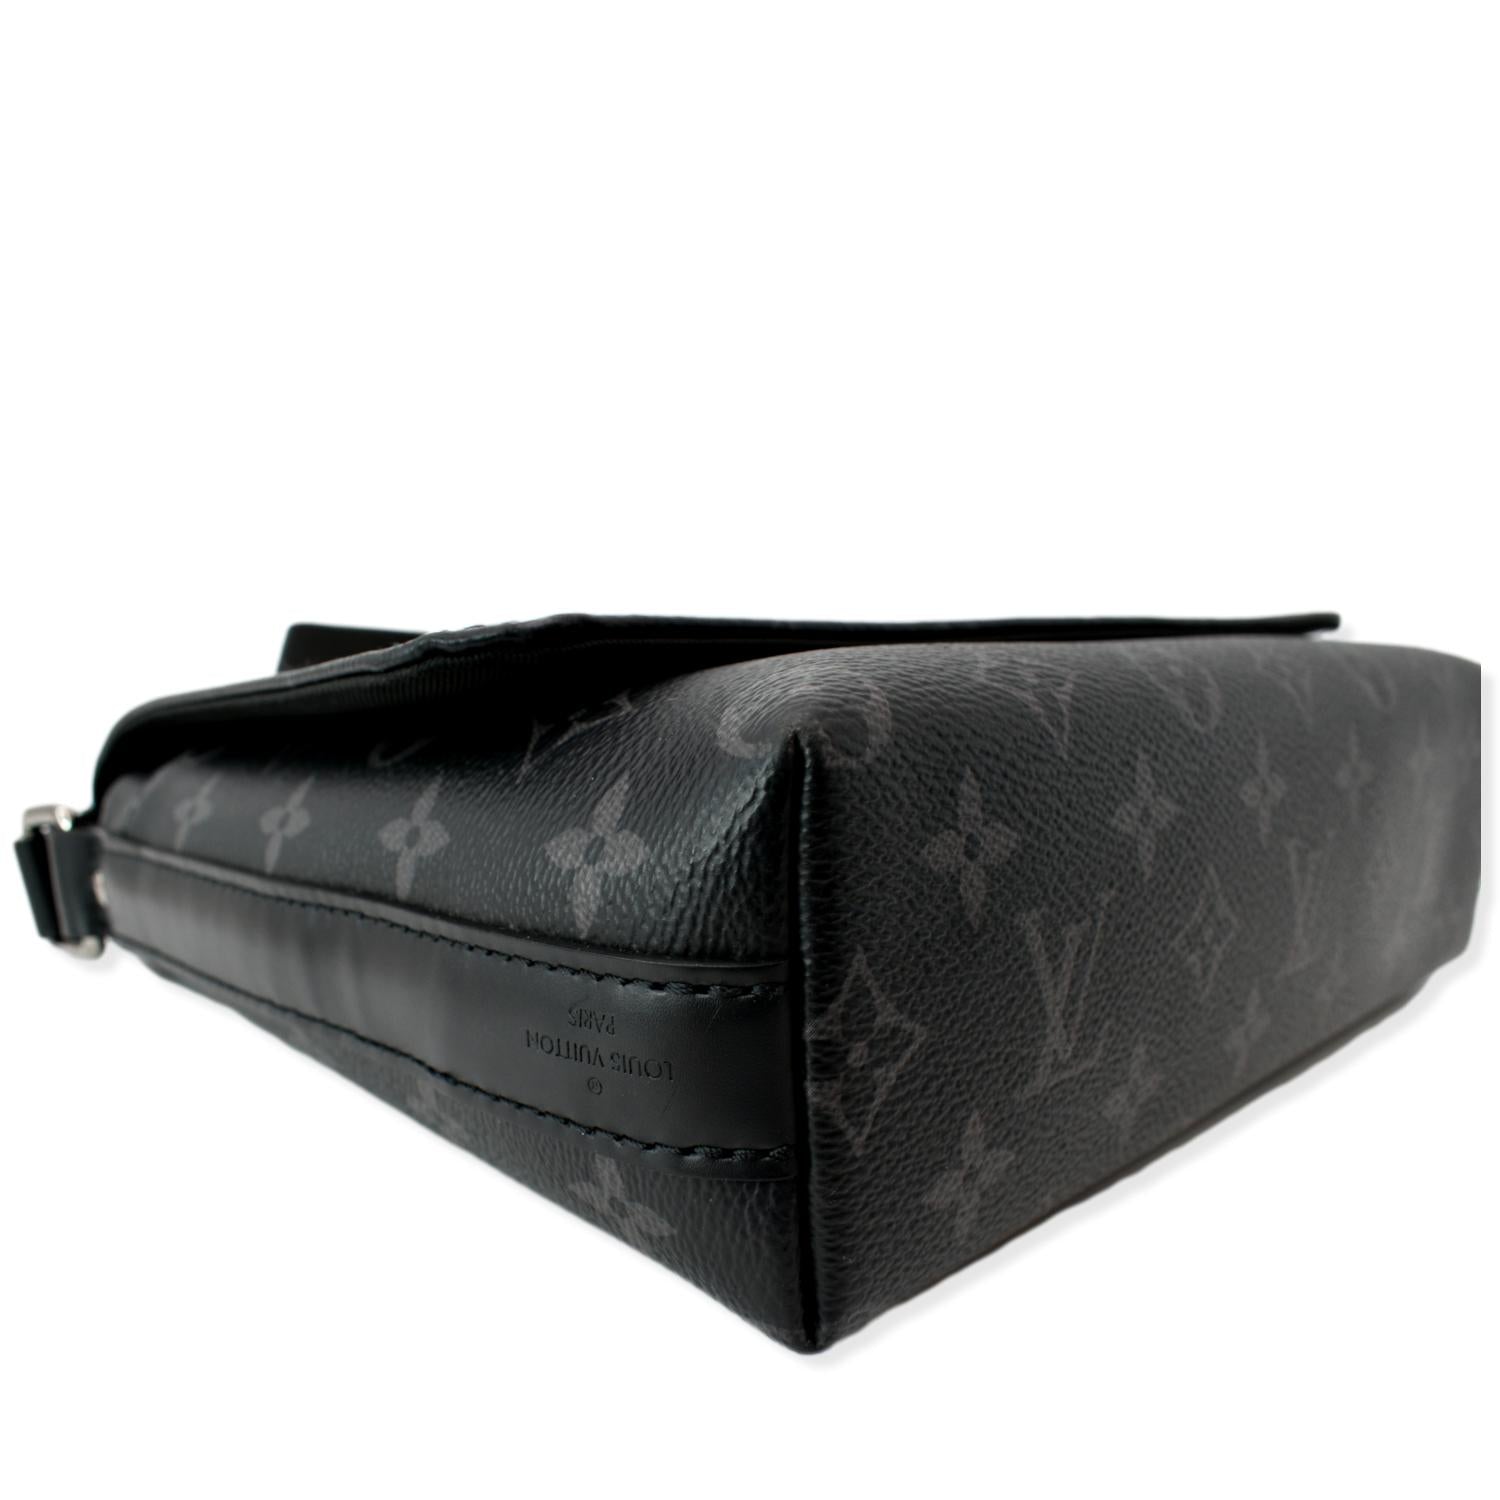 At Auction: Louis Vuitton, Louis Vuitton Monogram Black Eclipse District PM  Messenger Bag